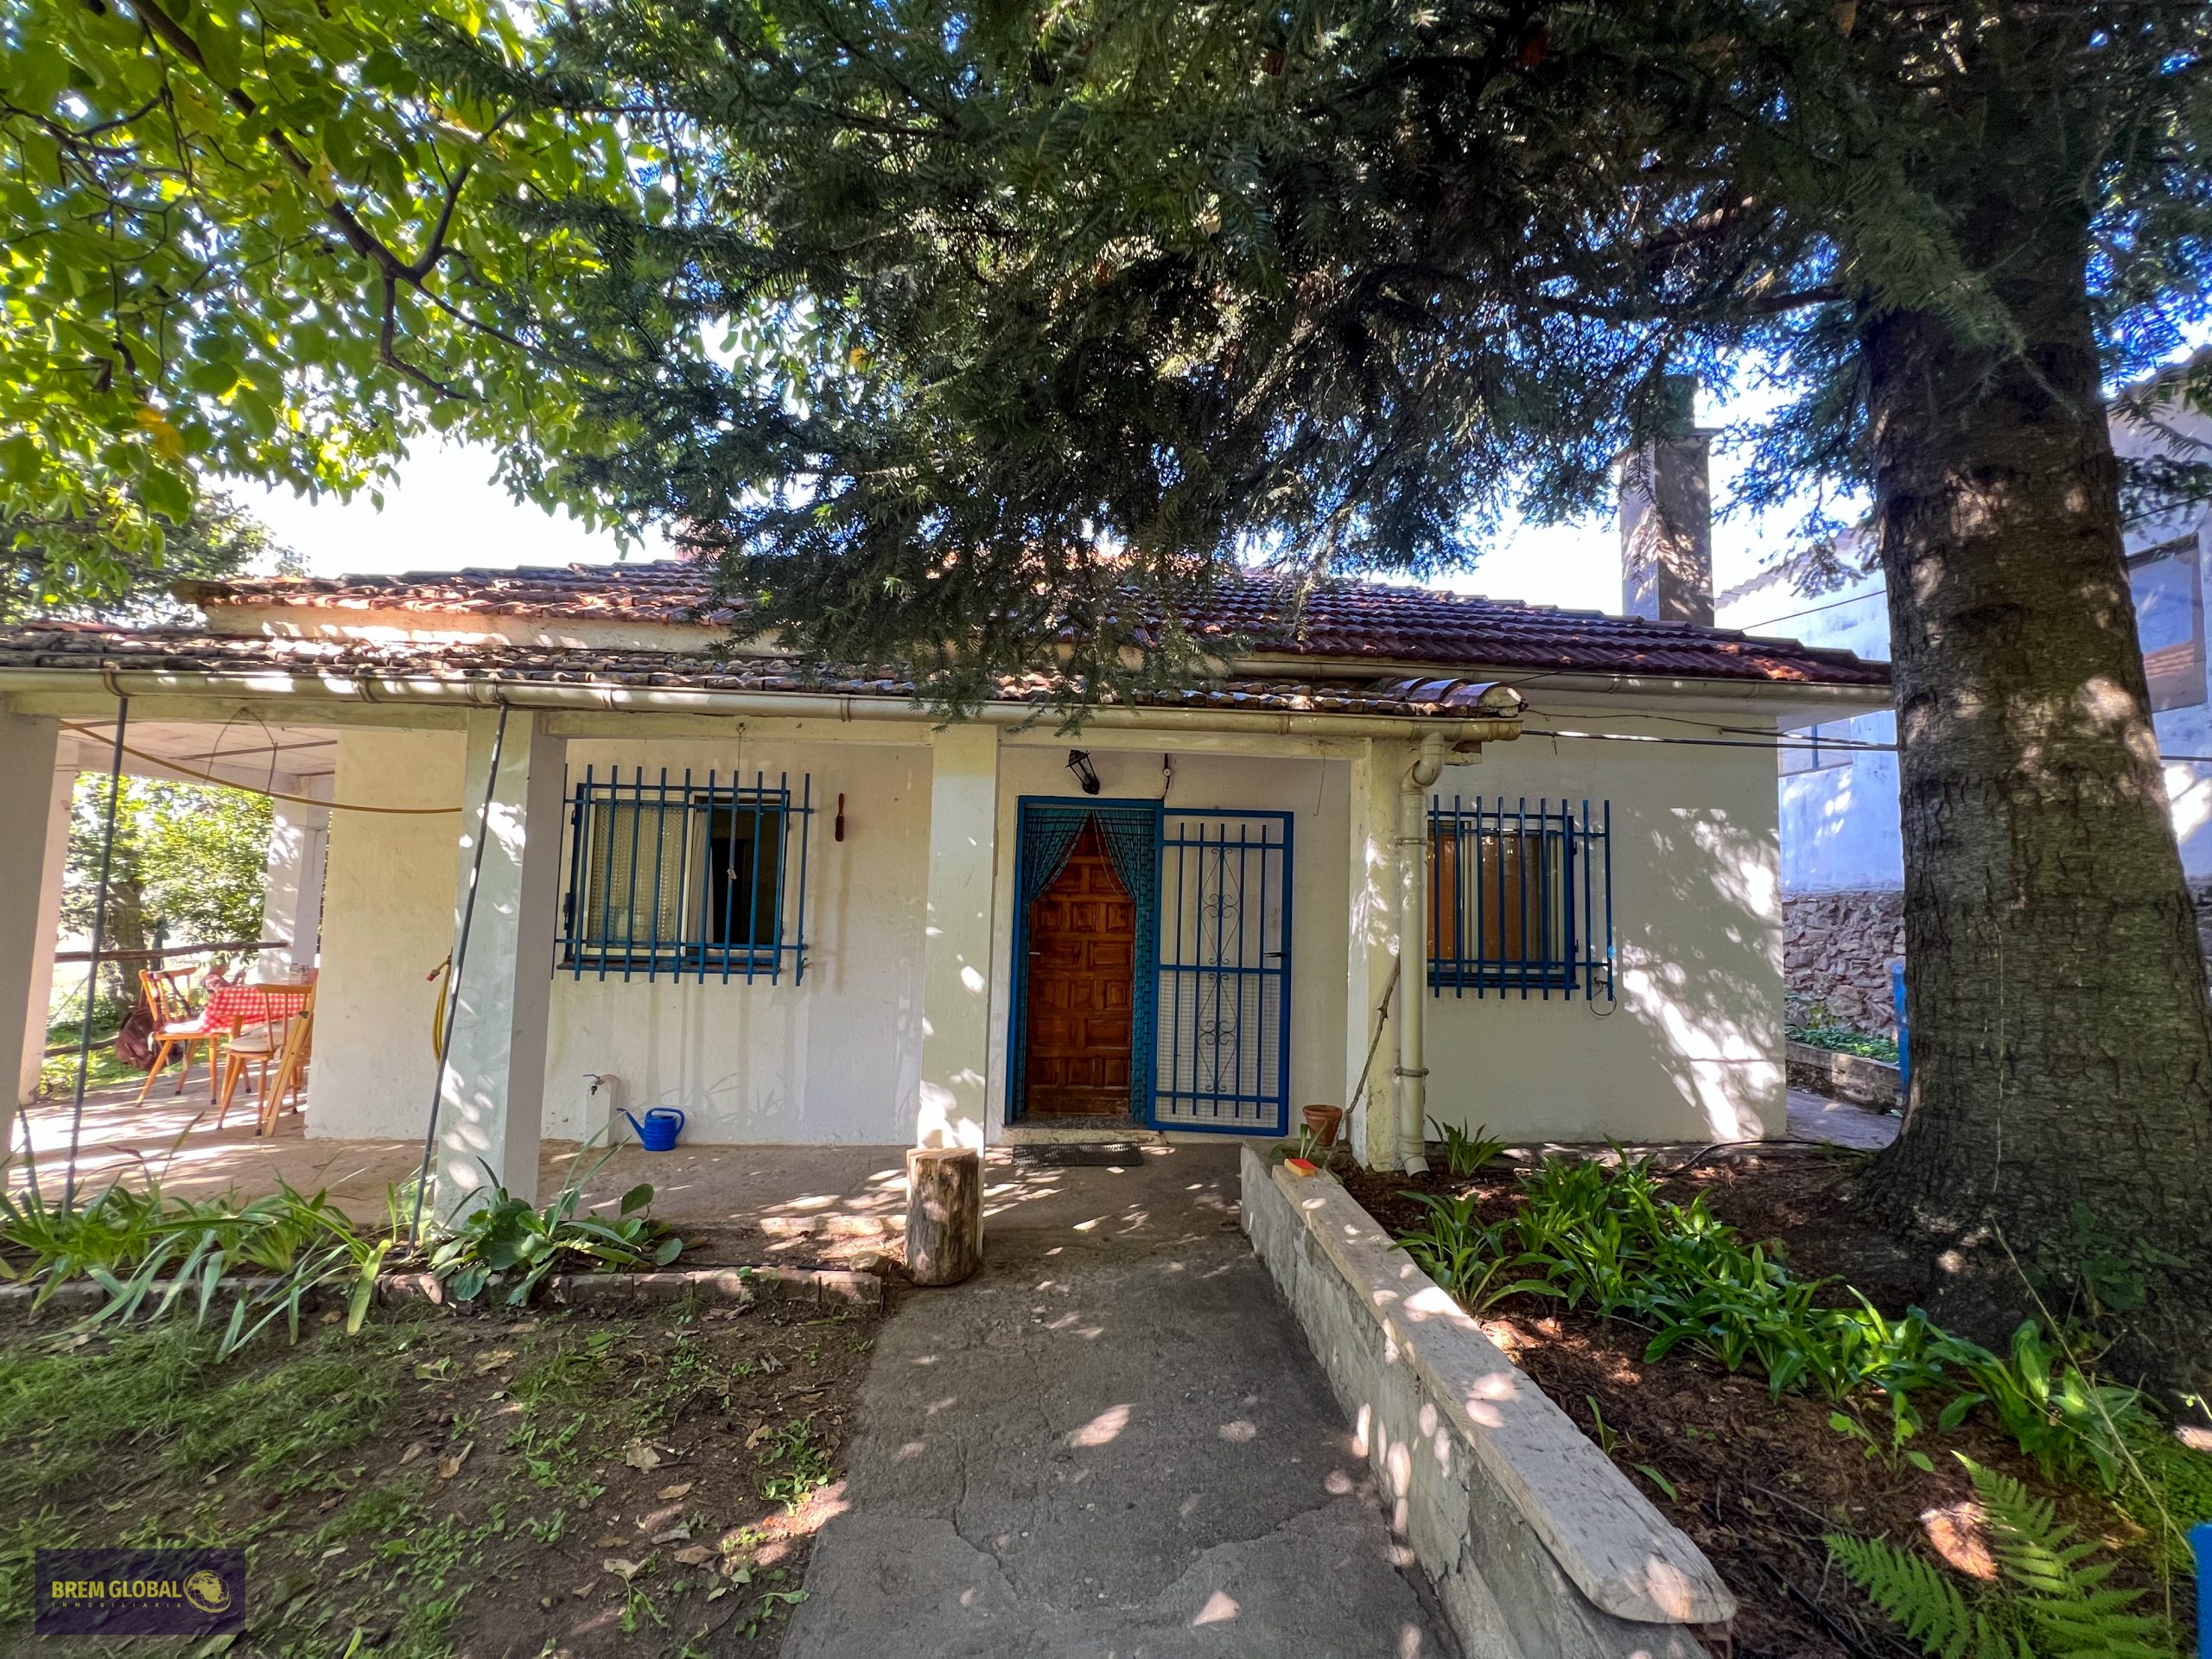 Desde Brem Global Inmobiliaria presentamos acogedora y práctica casa de pueblo en Horcajo de la Sierra.